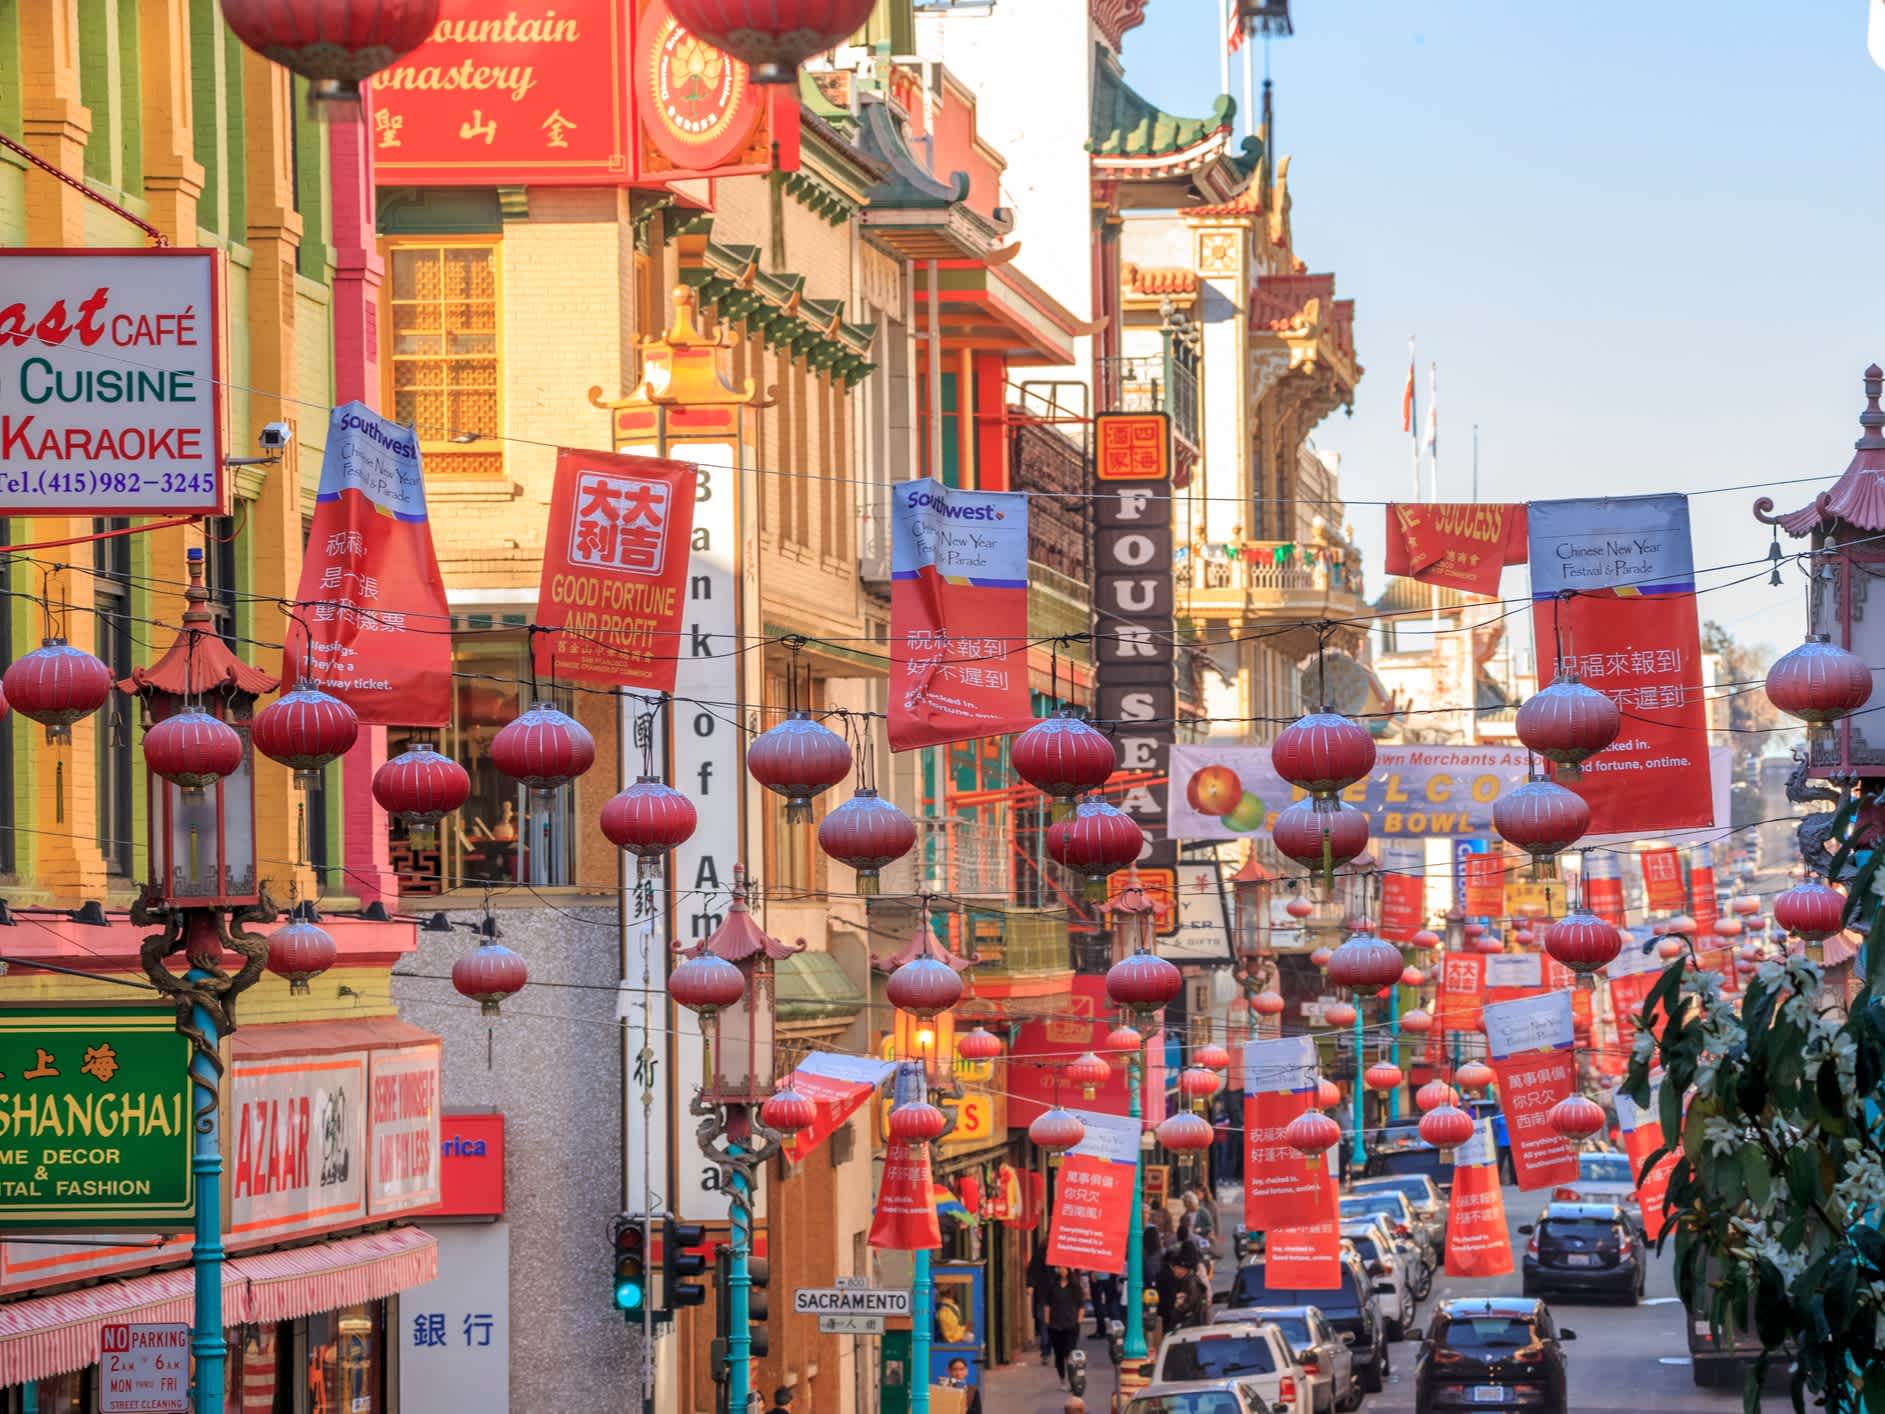 Rue principale du quartier de Chinatown à San Francisco, Californie, États-Unis.

